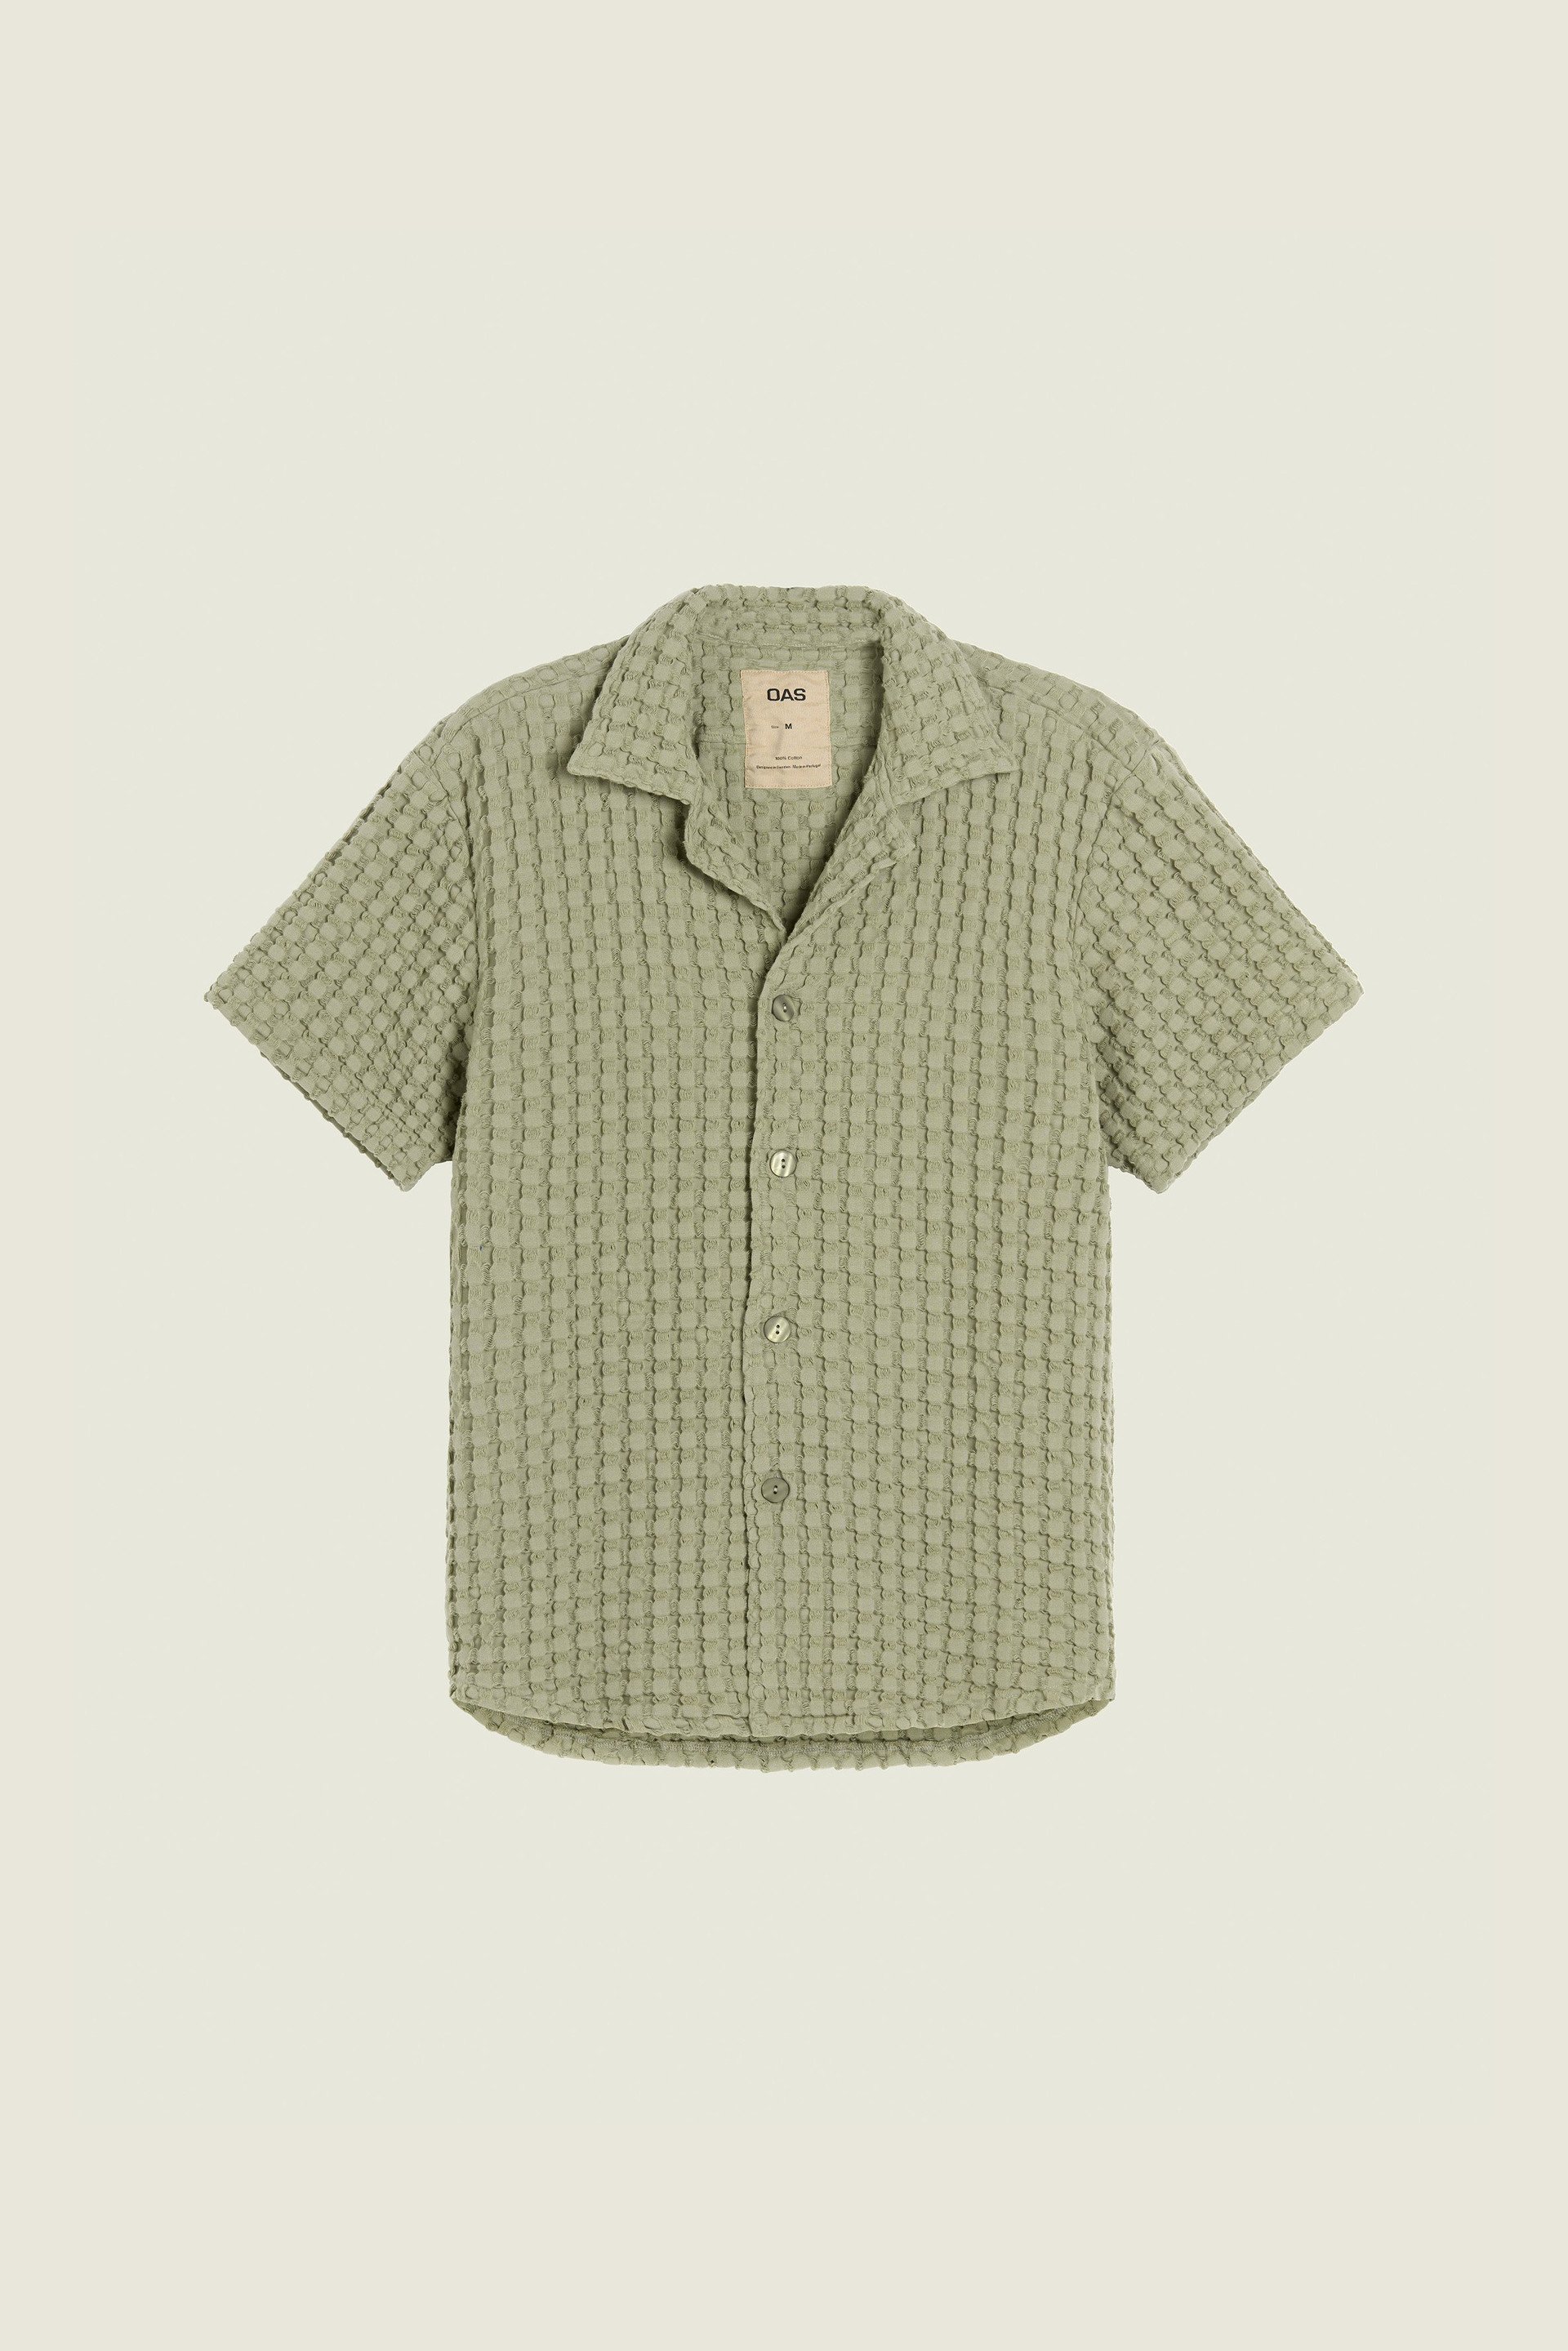 Dusty Green Cuba Waffle Shirt